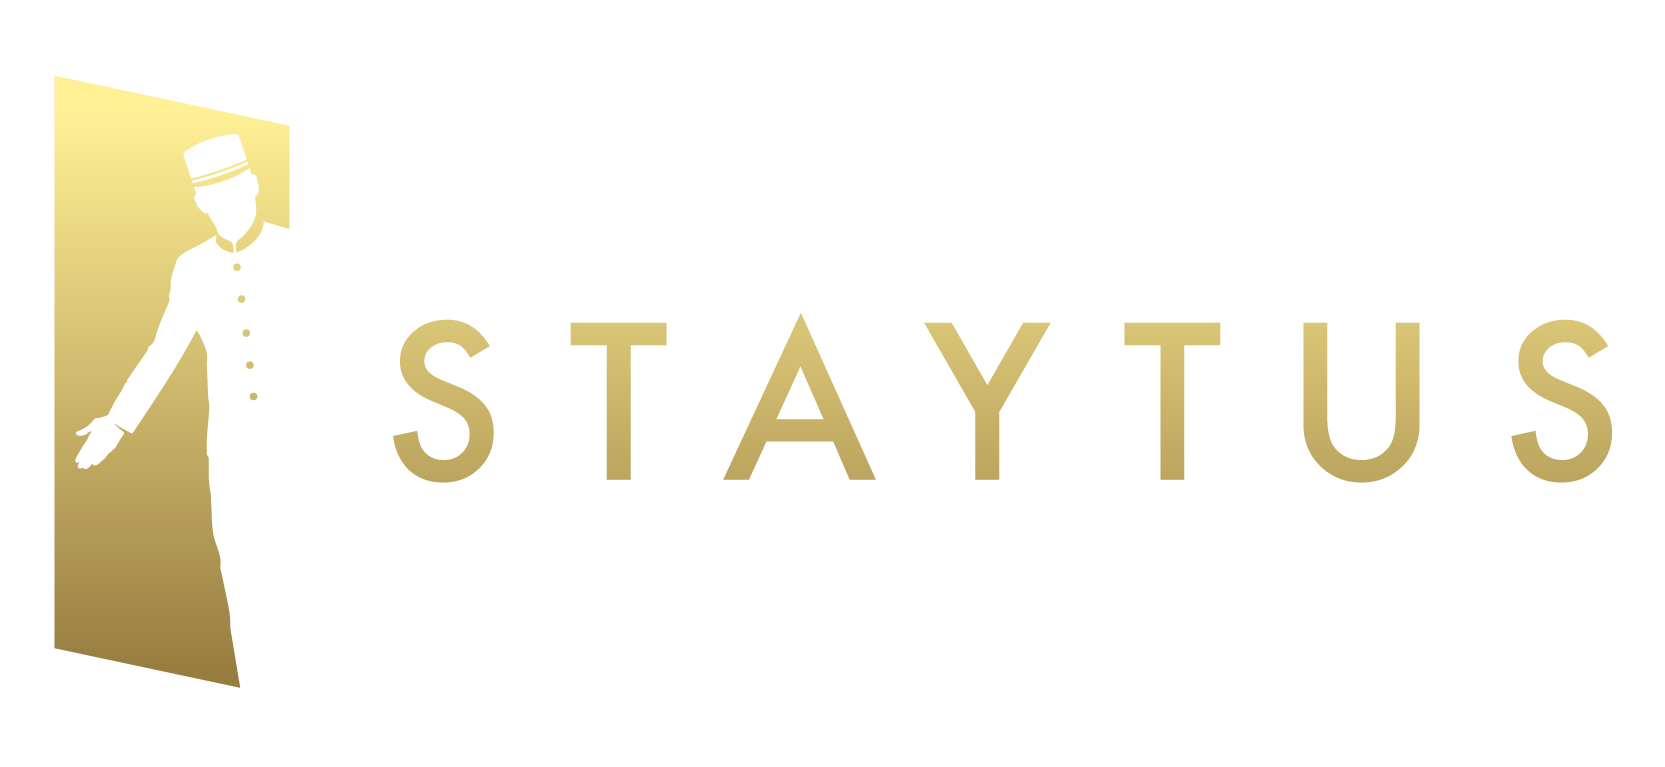 Staytus